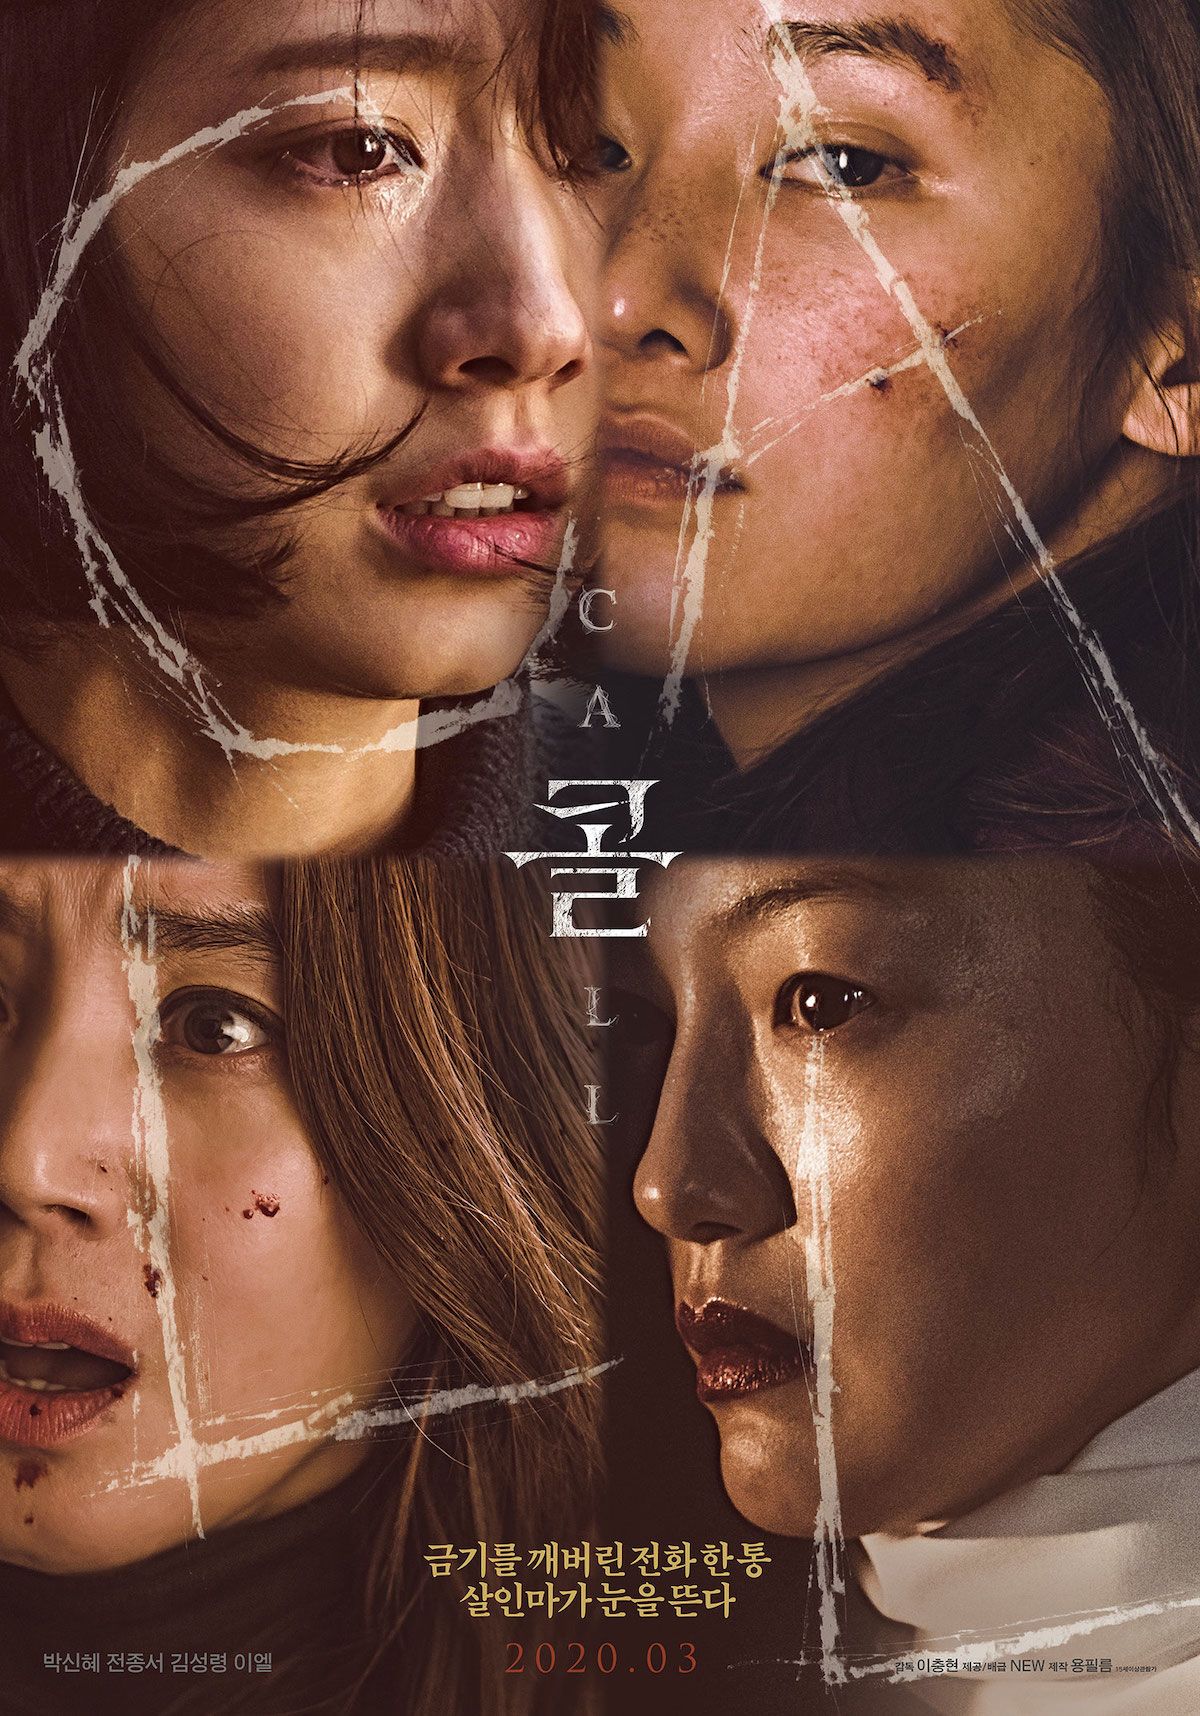 Film Drama korea Teh Call untuk menisi liburan akhir tahun 2020